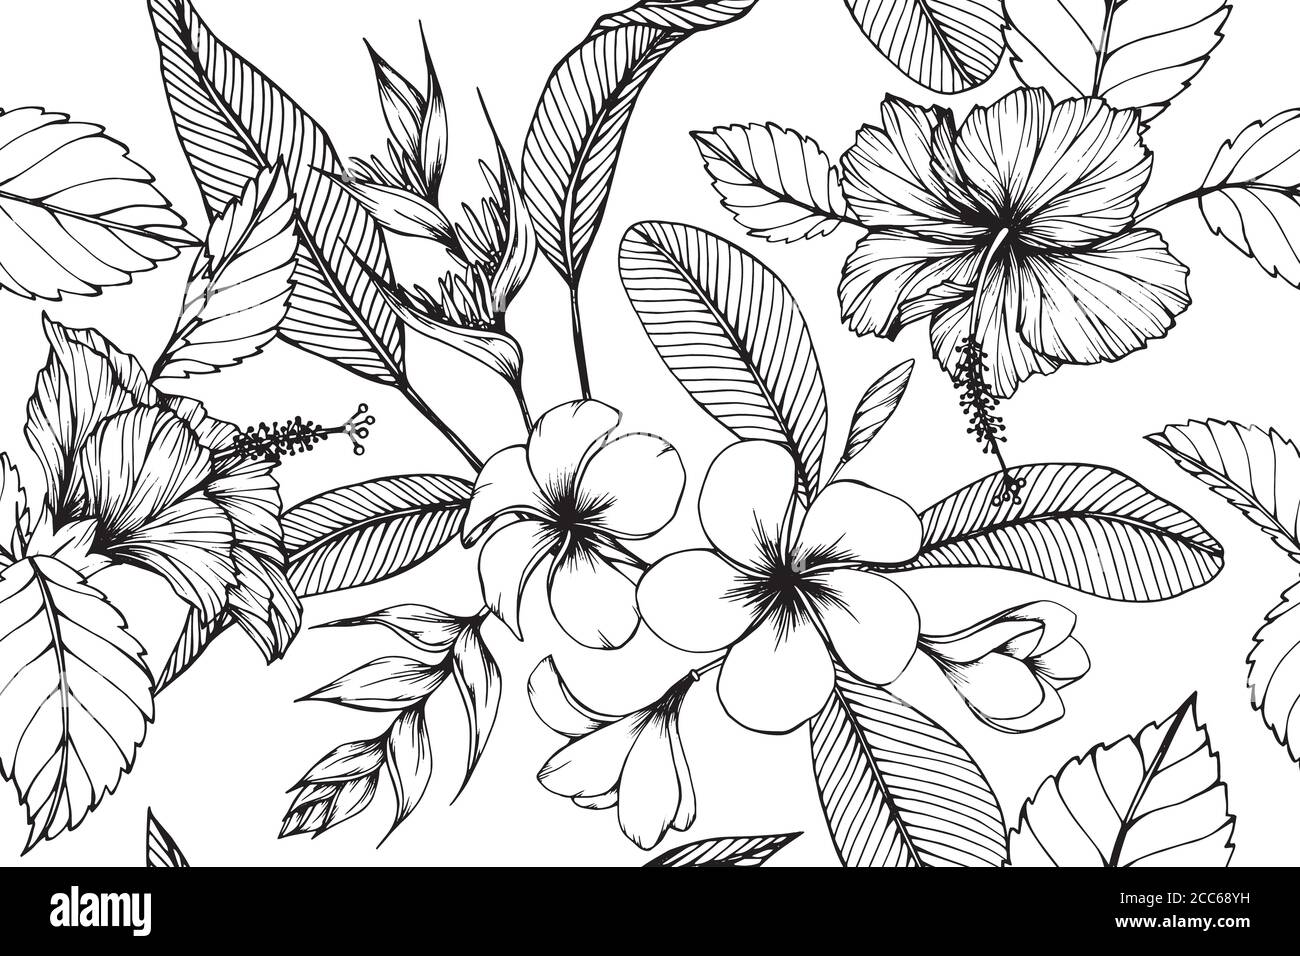 Flor hawaiana Imágenes de stock en blanco y negro - Página 2 - Alamy